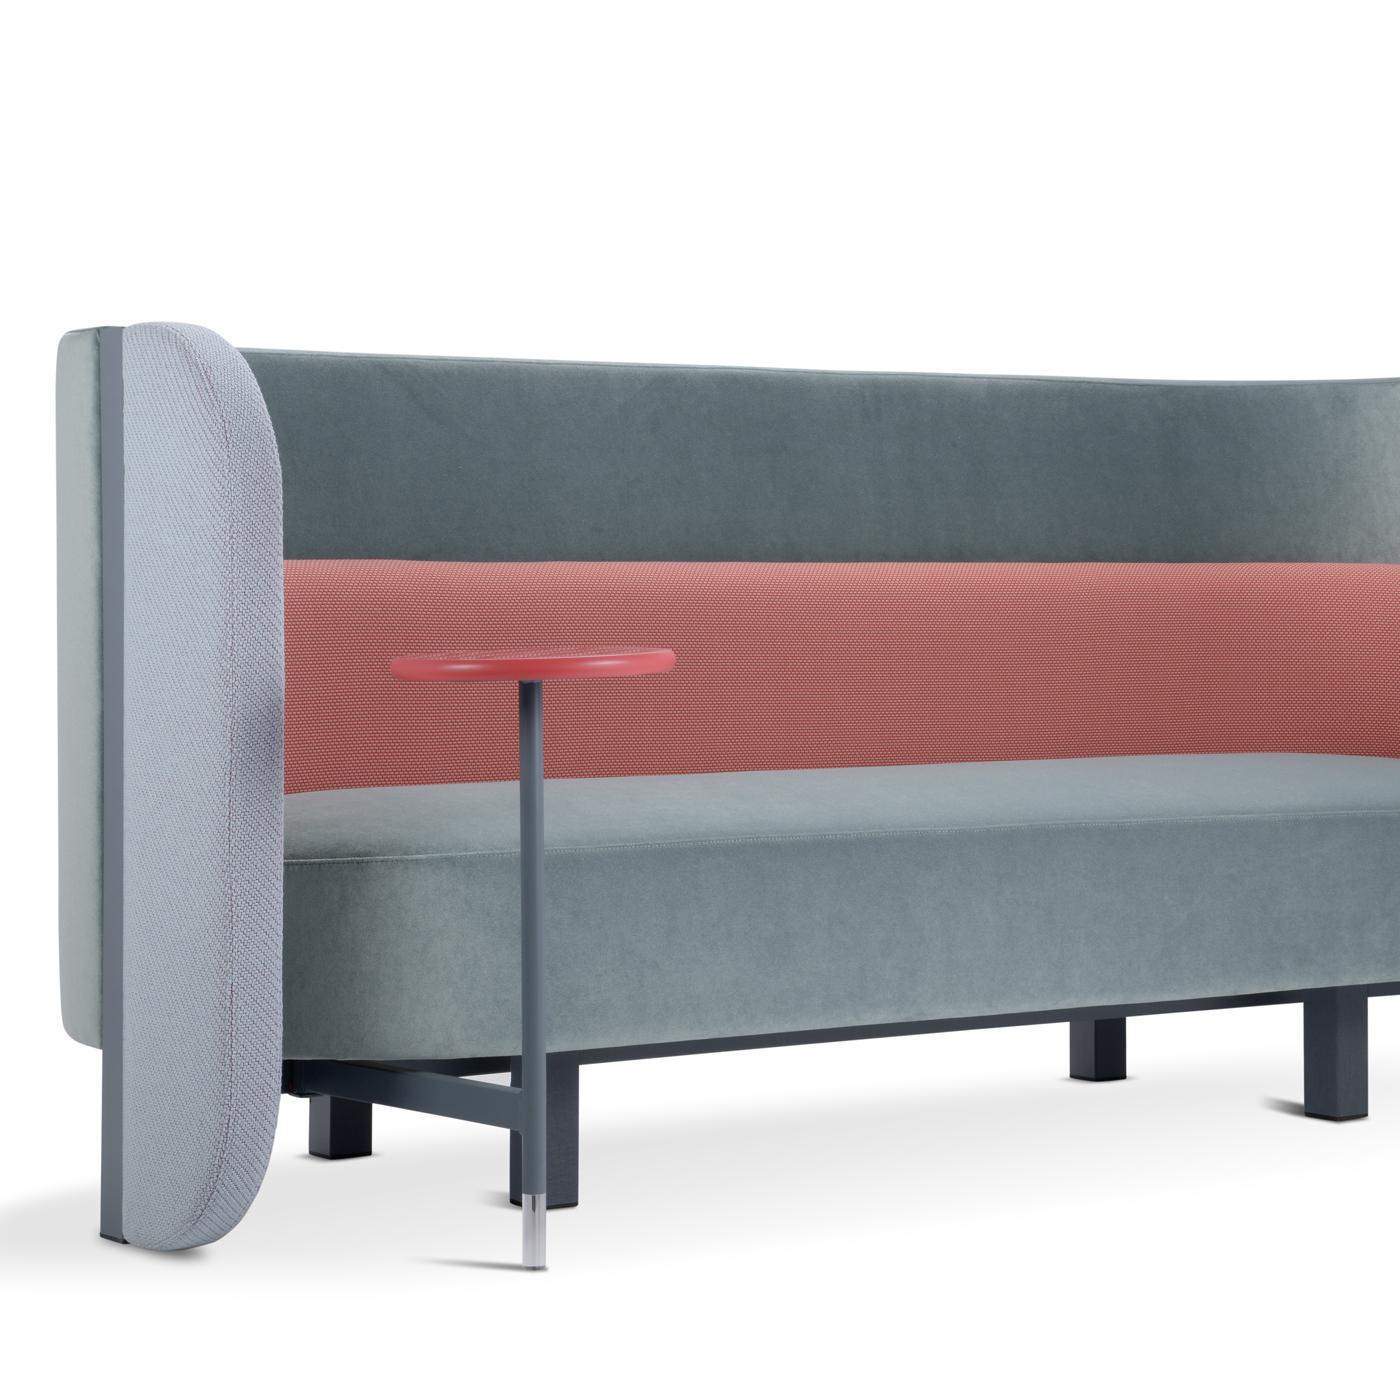 Multifunktionales Sofa, auf dem Sie sich entspannen oder arbeiten können, dank des praktischen kleinen Tisches und der USB-Anschlüsse für Ihre mobilen Geräte. Die umhüllende Form, die durch zwei sich schließende und schützende Flügel gekennzeichnet